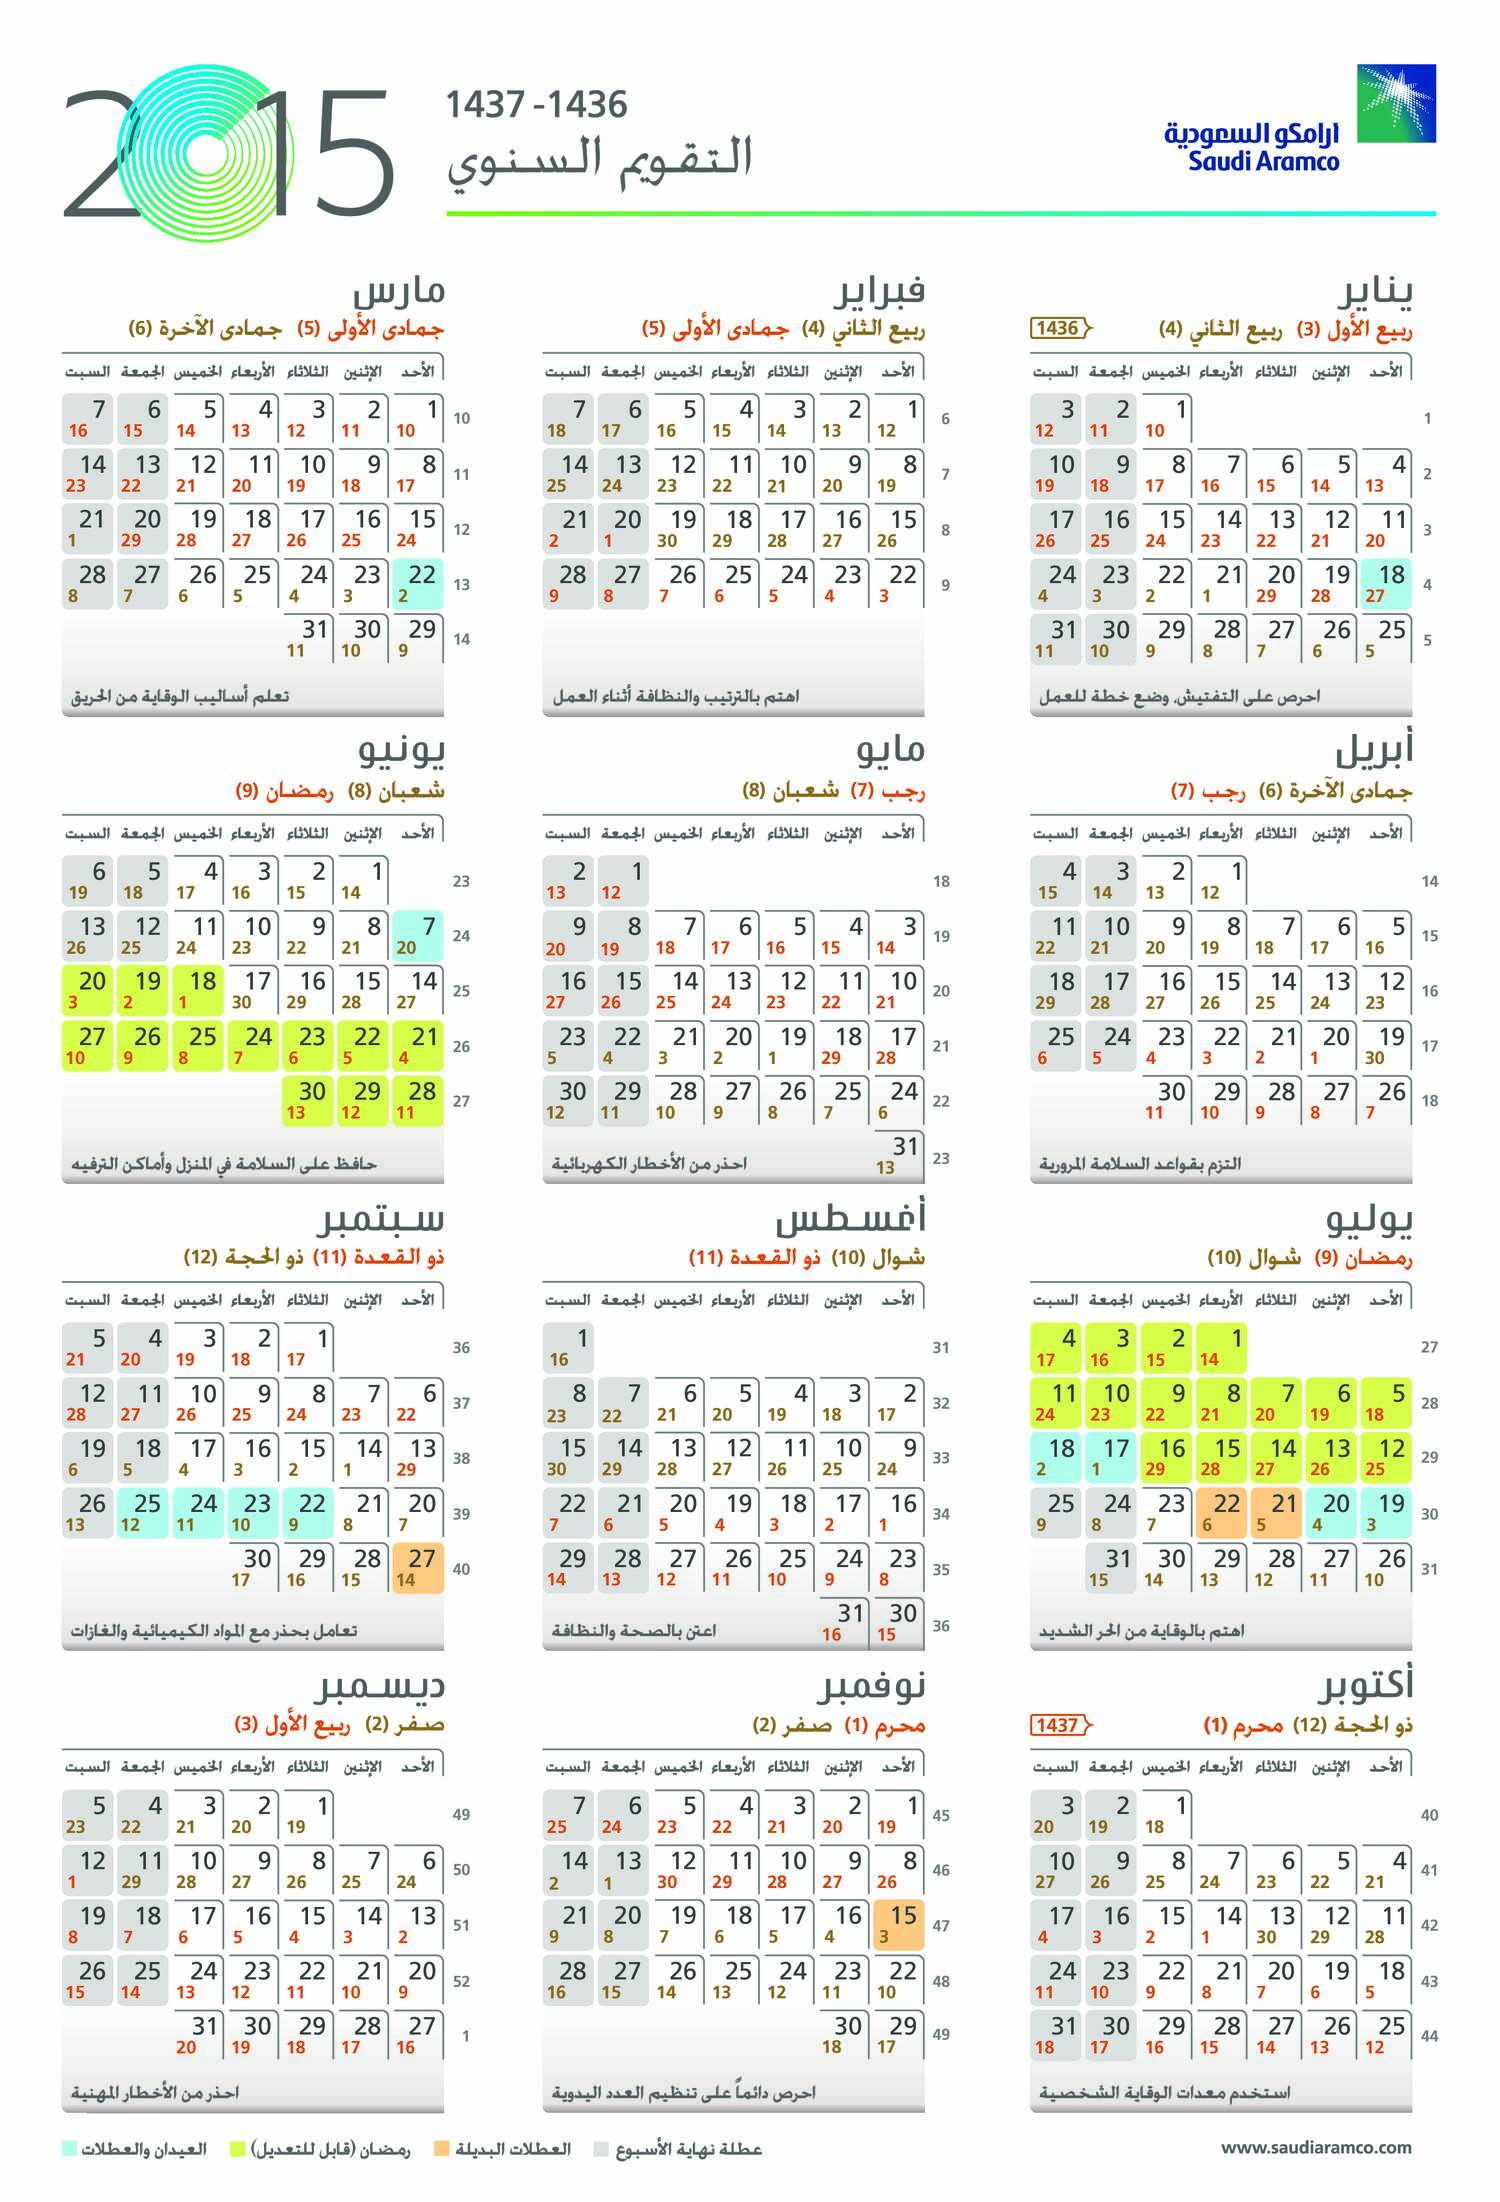 2022-aramco-operational-calendar-2022